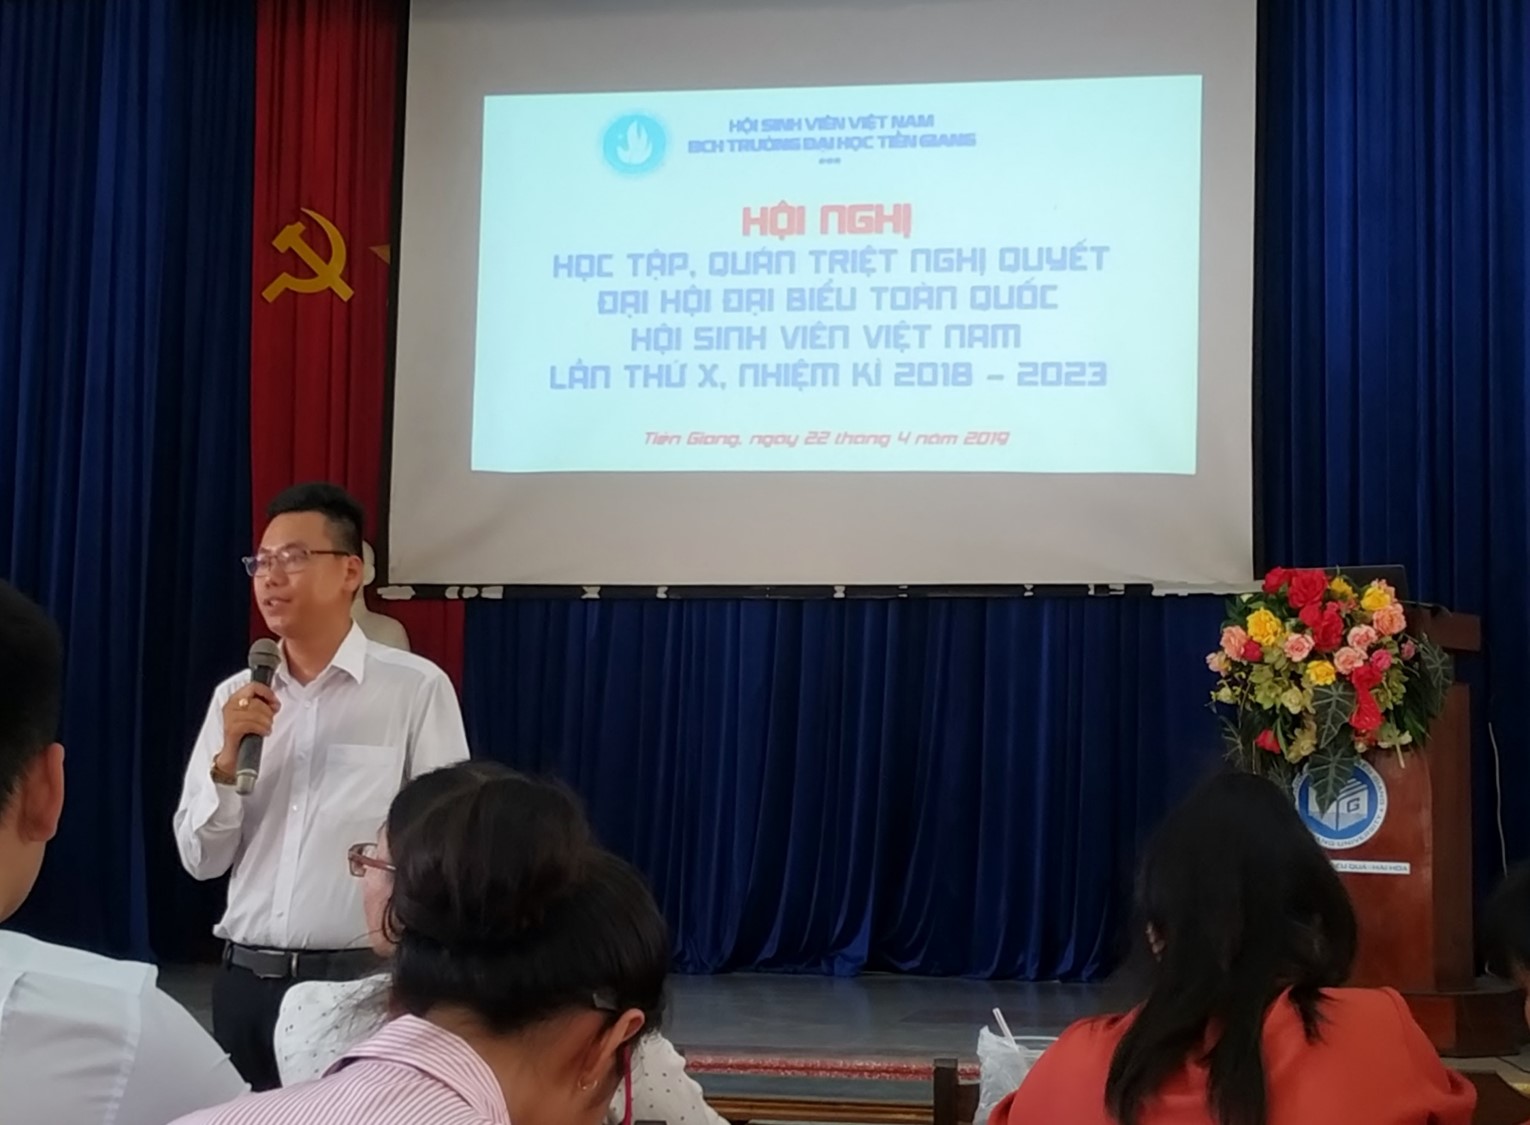 Hội nghị học tập, quán triệt Nghị quyết Đại hội đại biểu toàn quốc Hội Sinh viên Việt Nam lần thứ X, nhiệm kì 2018 - 2023